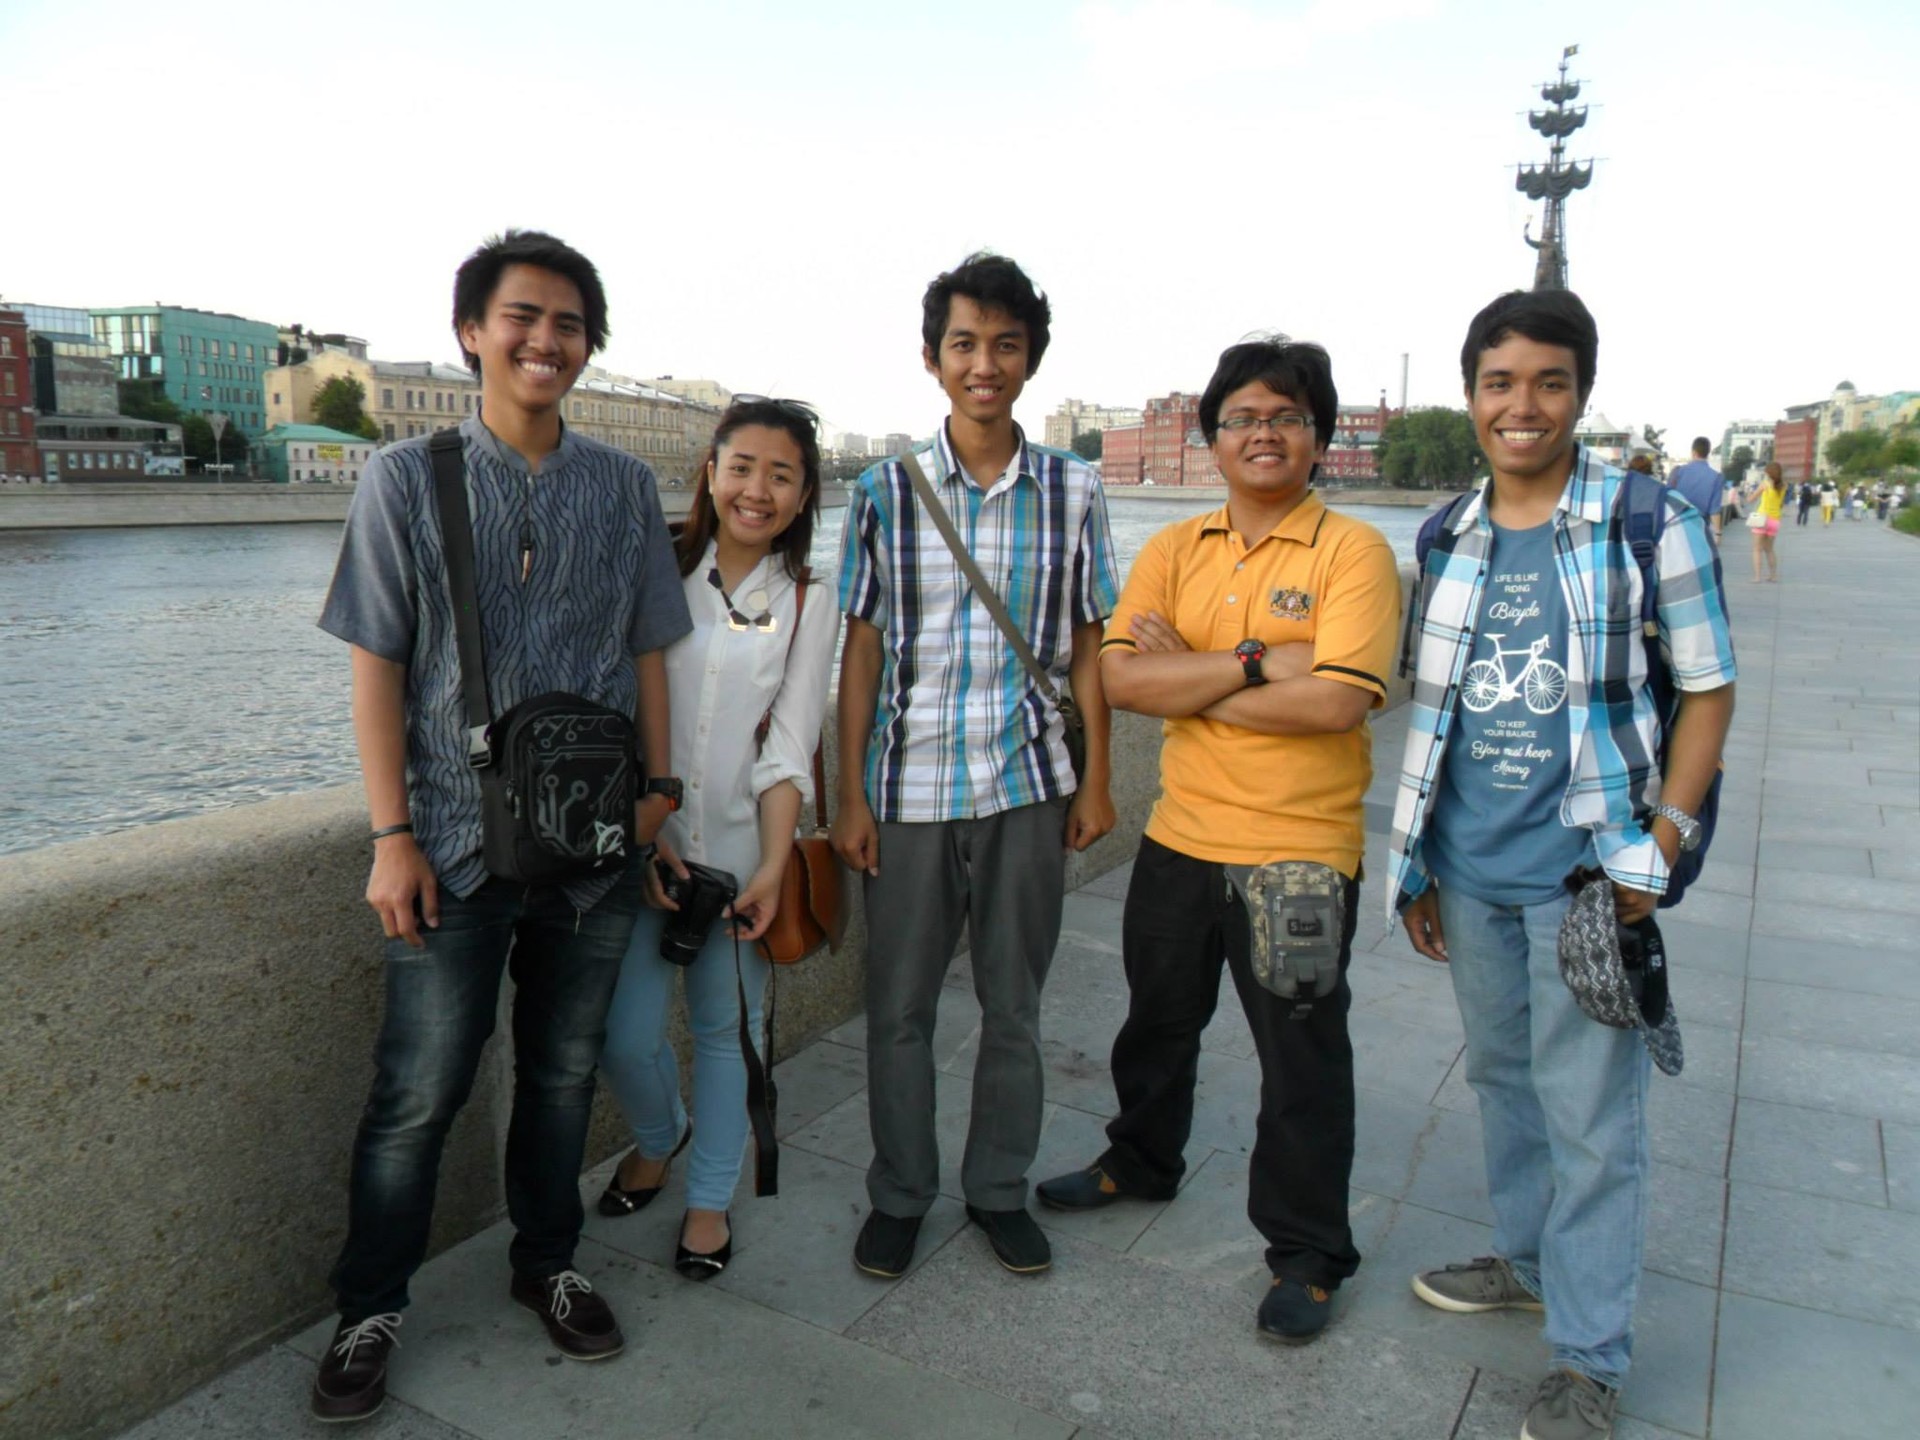 Yodha (tengah), berfoto bersama para Mahasiswa Indonesia saat transit di Moskow setelah program pertukaran mahasiswa di Belgorod pada 2014.